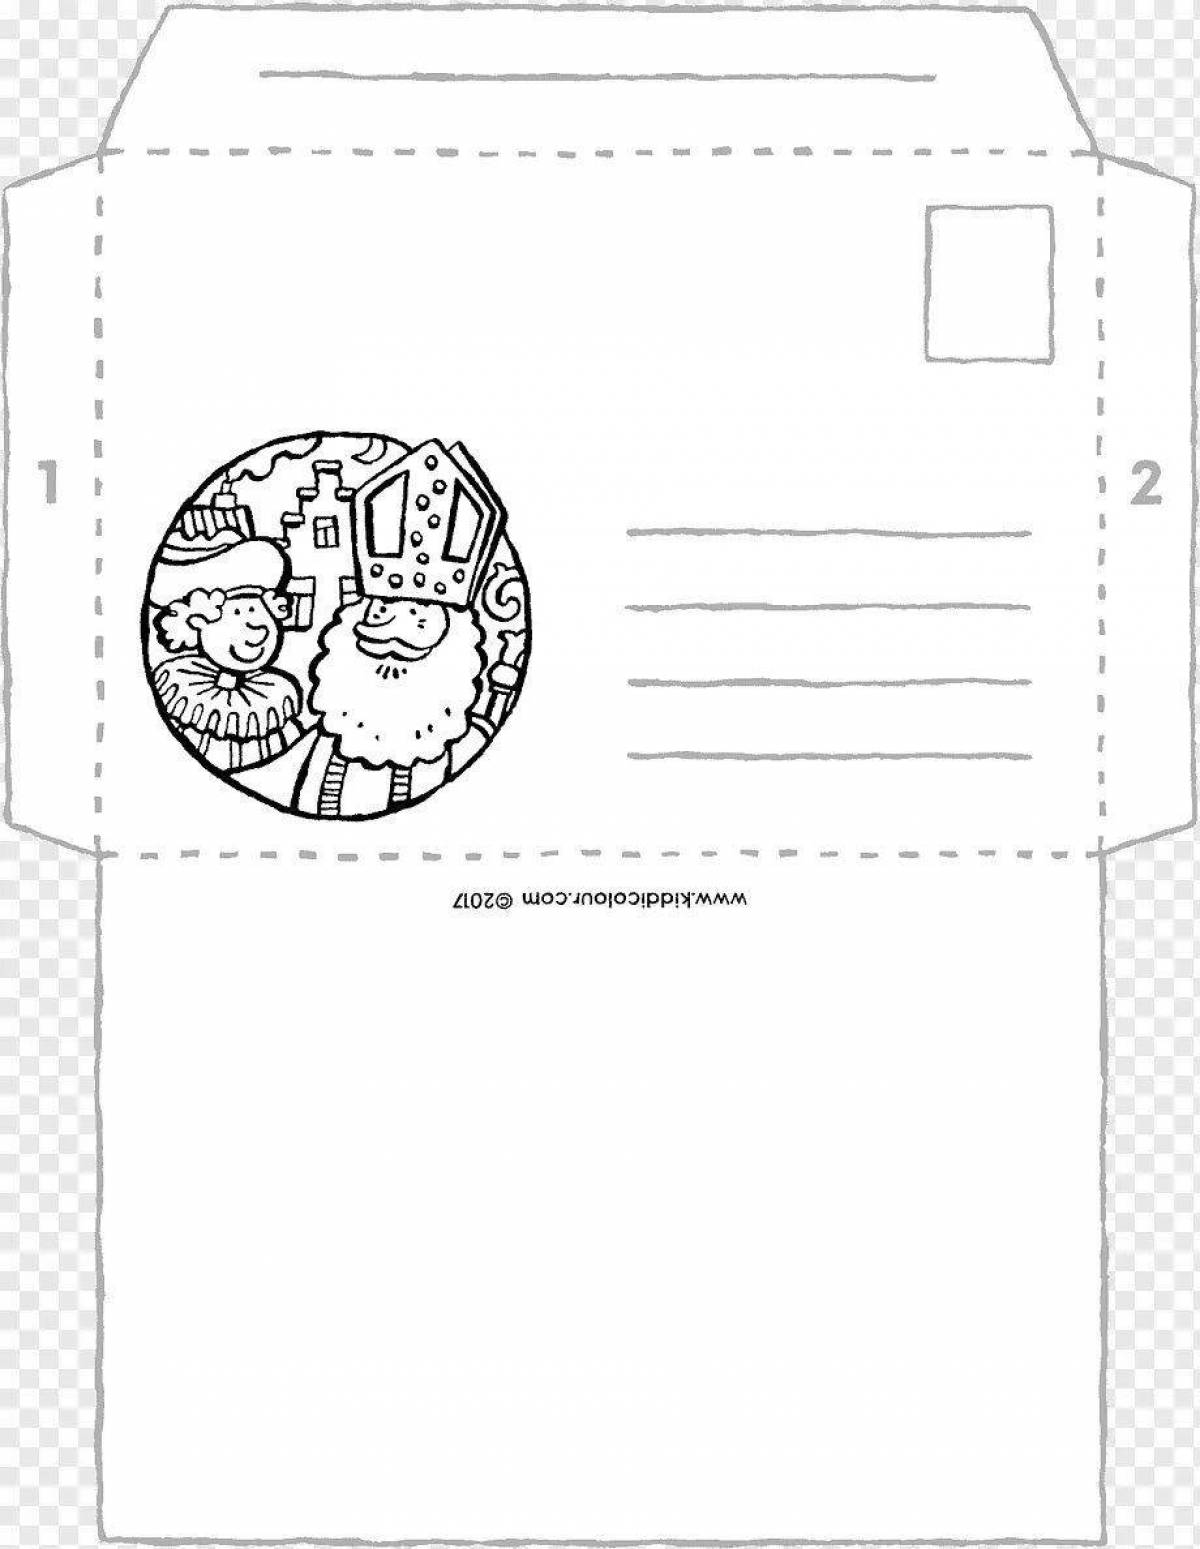 Unique cool envelope templates